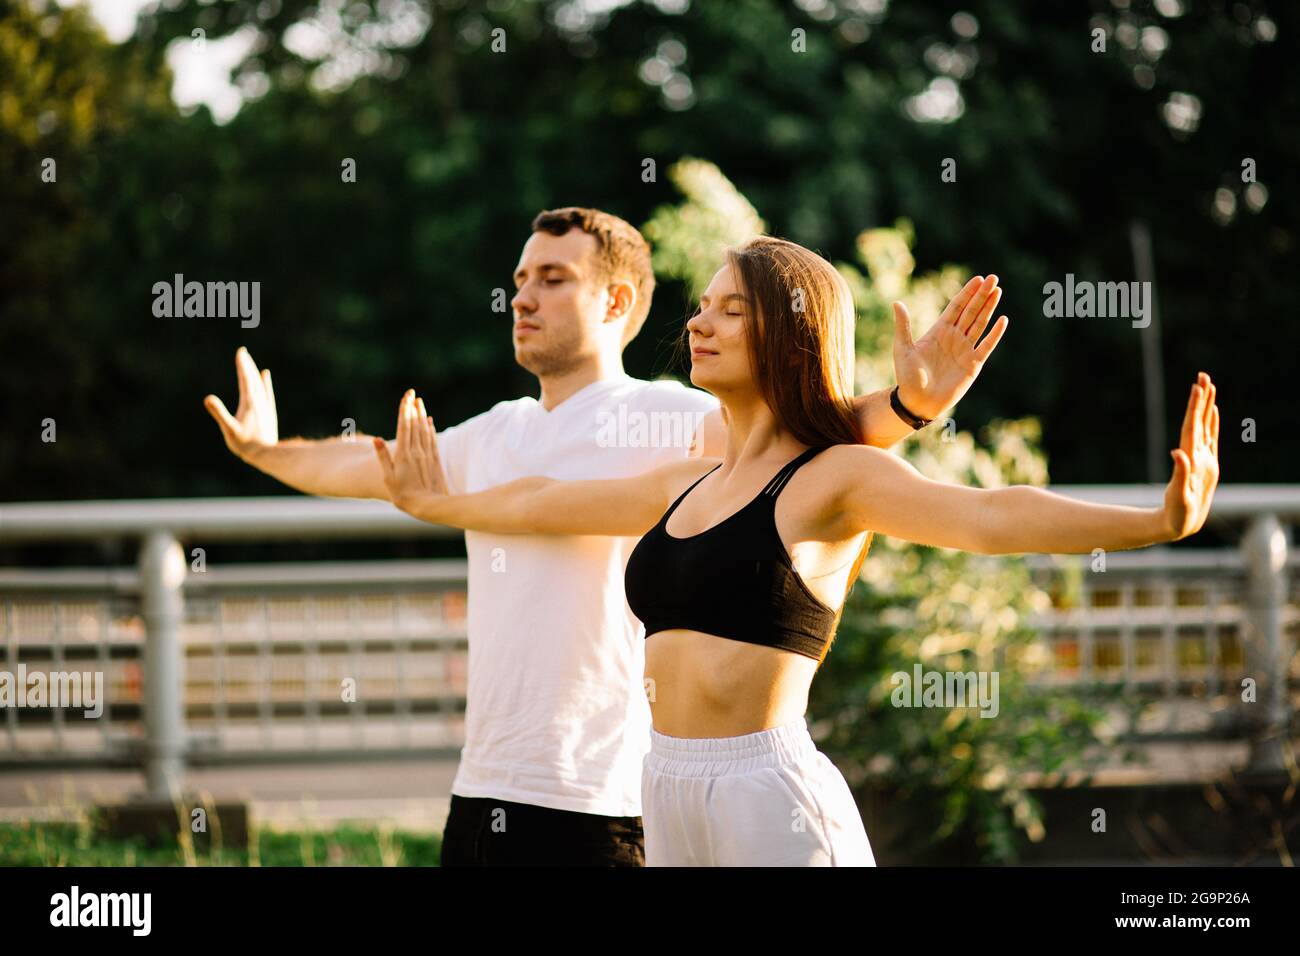 Das junge Paar, Mann und Frau, meditieren gemeinsam beim Sonnenuntergang, während sie stehen, Yoga auf dem Rasen, Sommerabend, Stadtleben, Atemübungen Stockfoto